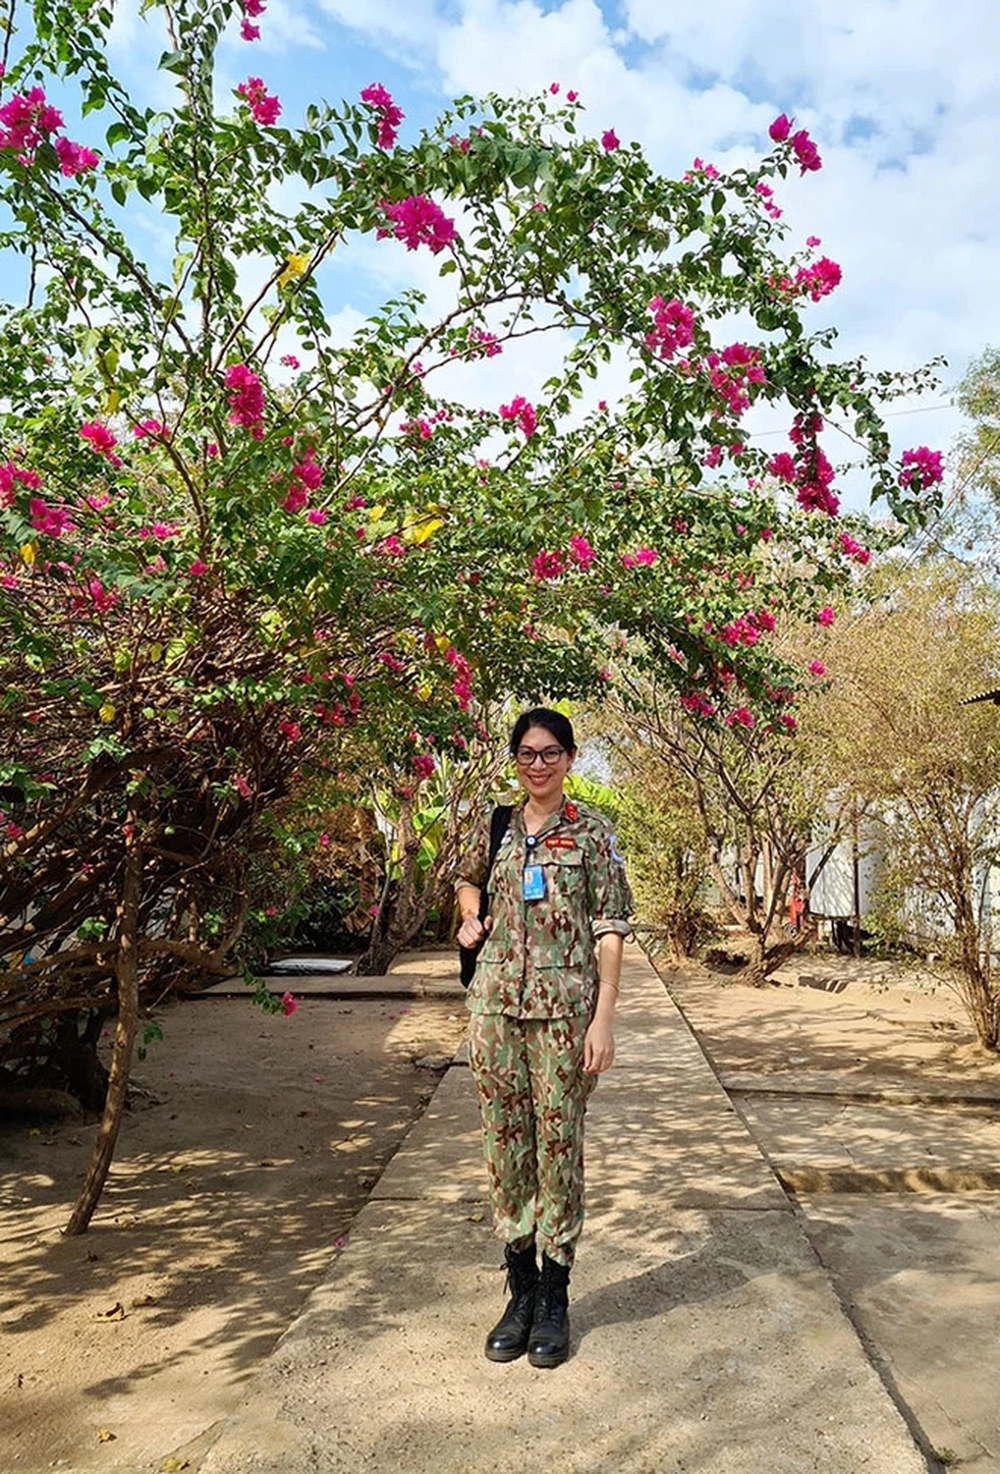 Làm nhiệm vụ ở Châu Phi, nữ Trung Tá Việt khiến đồng nghiệp nước bạn nể sau một thử thách - Ảnh 6.